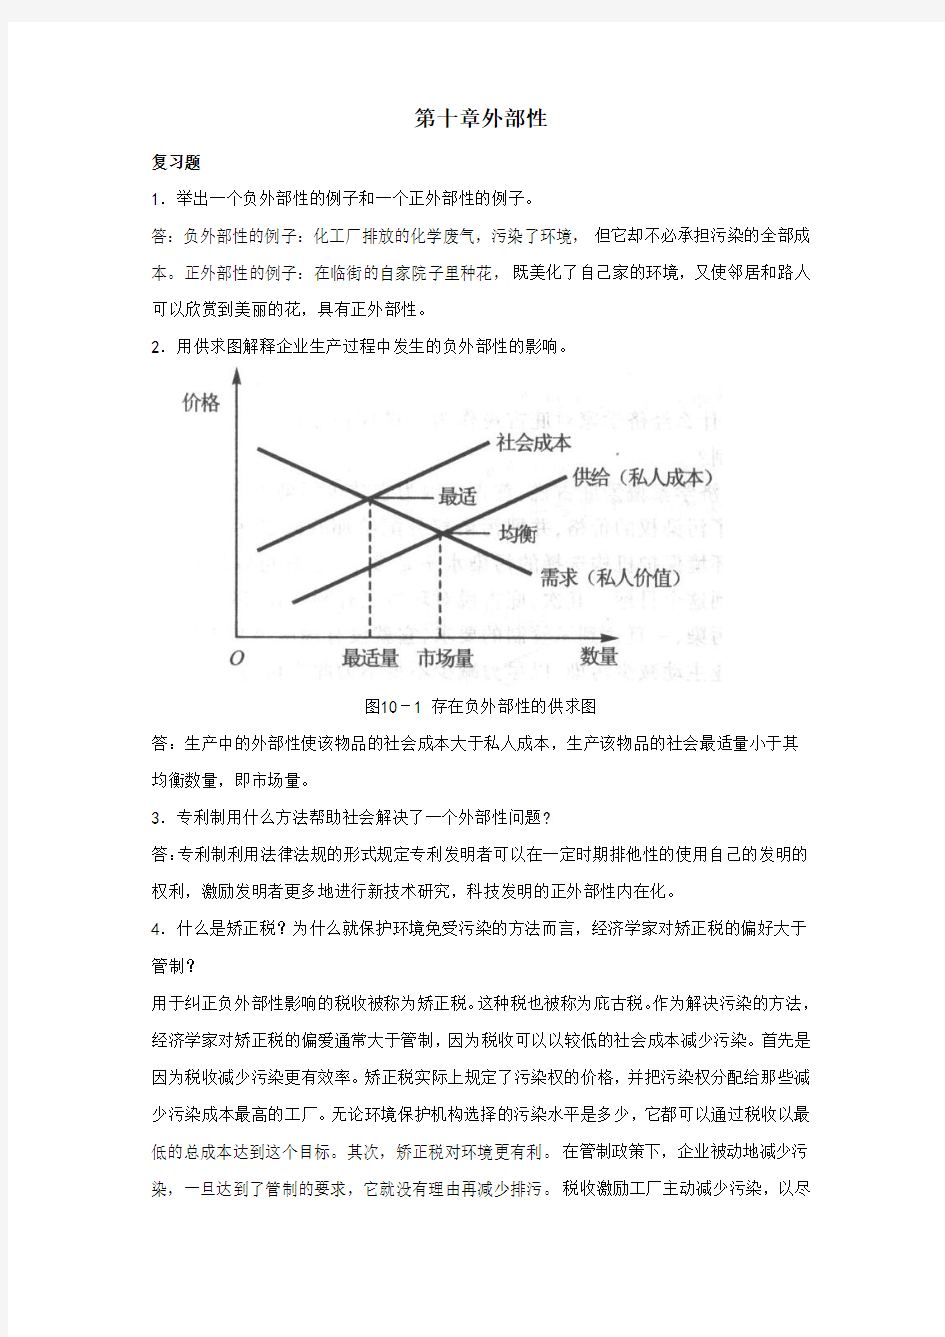 曼昆《经济学原理》第6版-微观经济学分册-课后习题答案-第10章